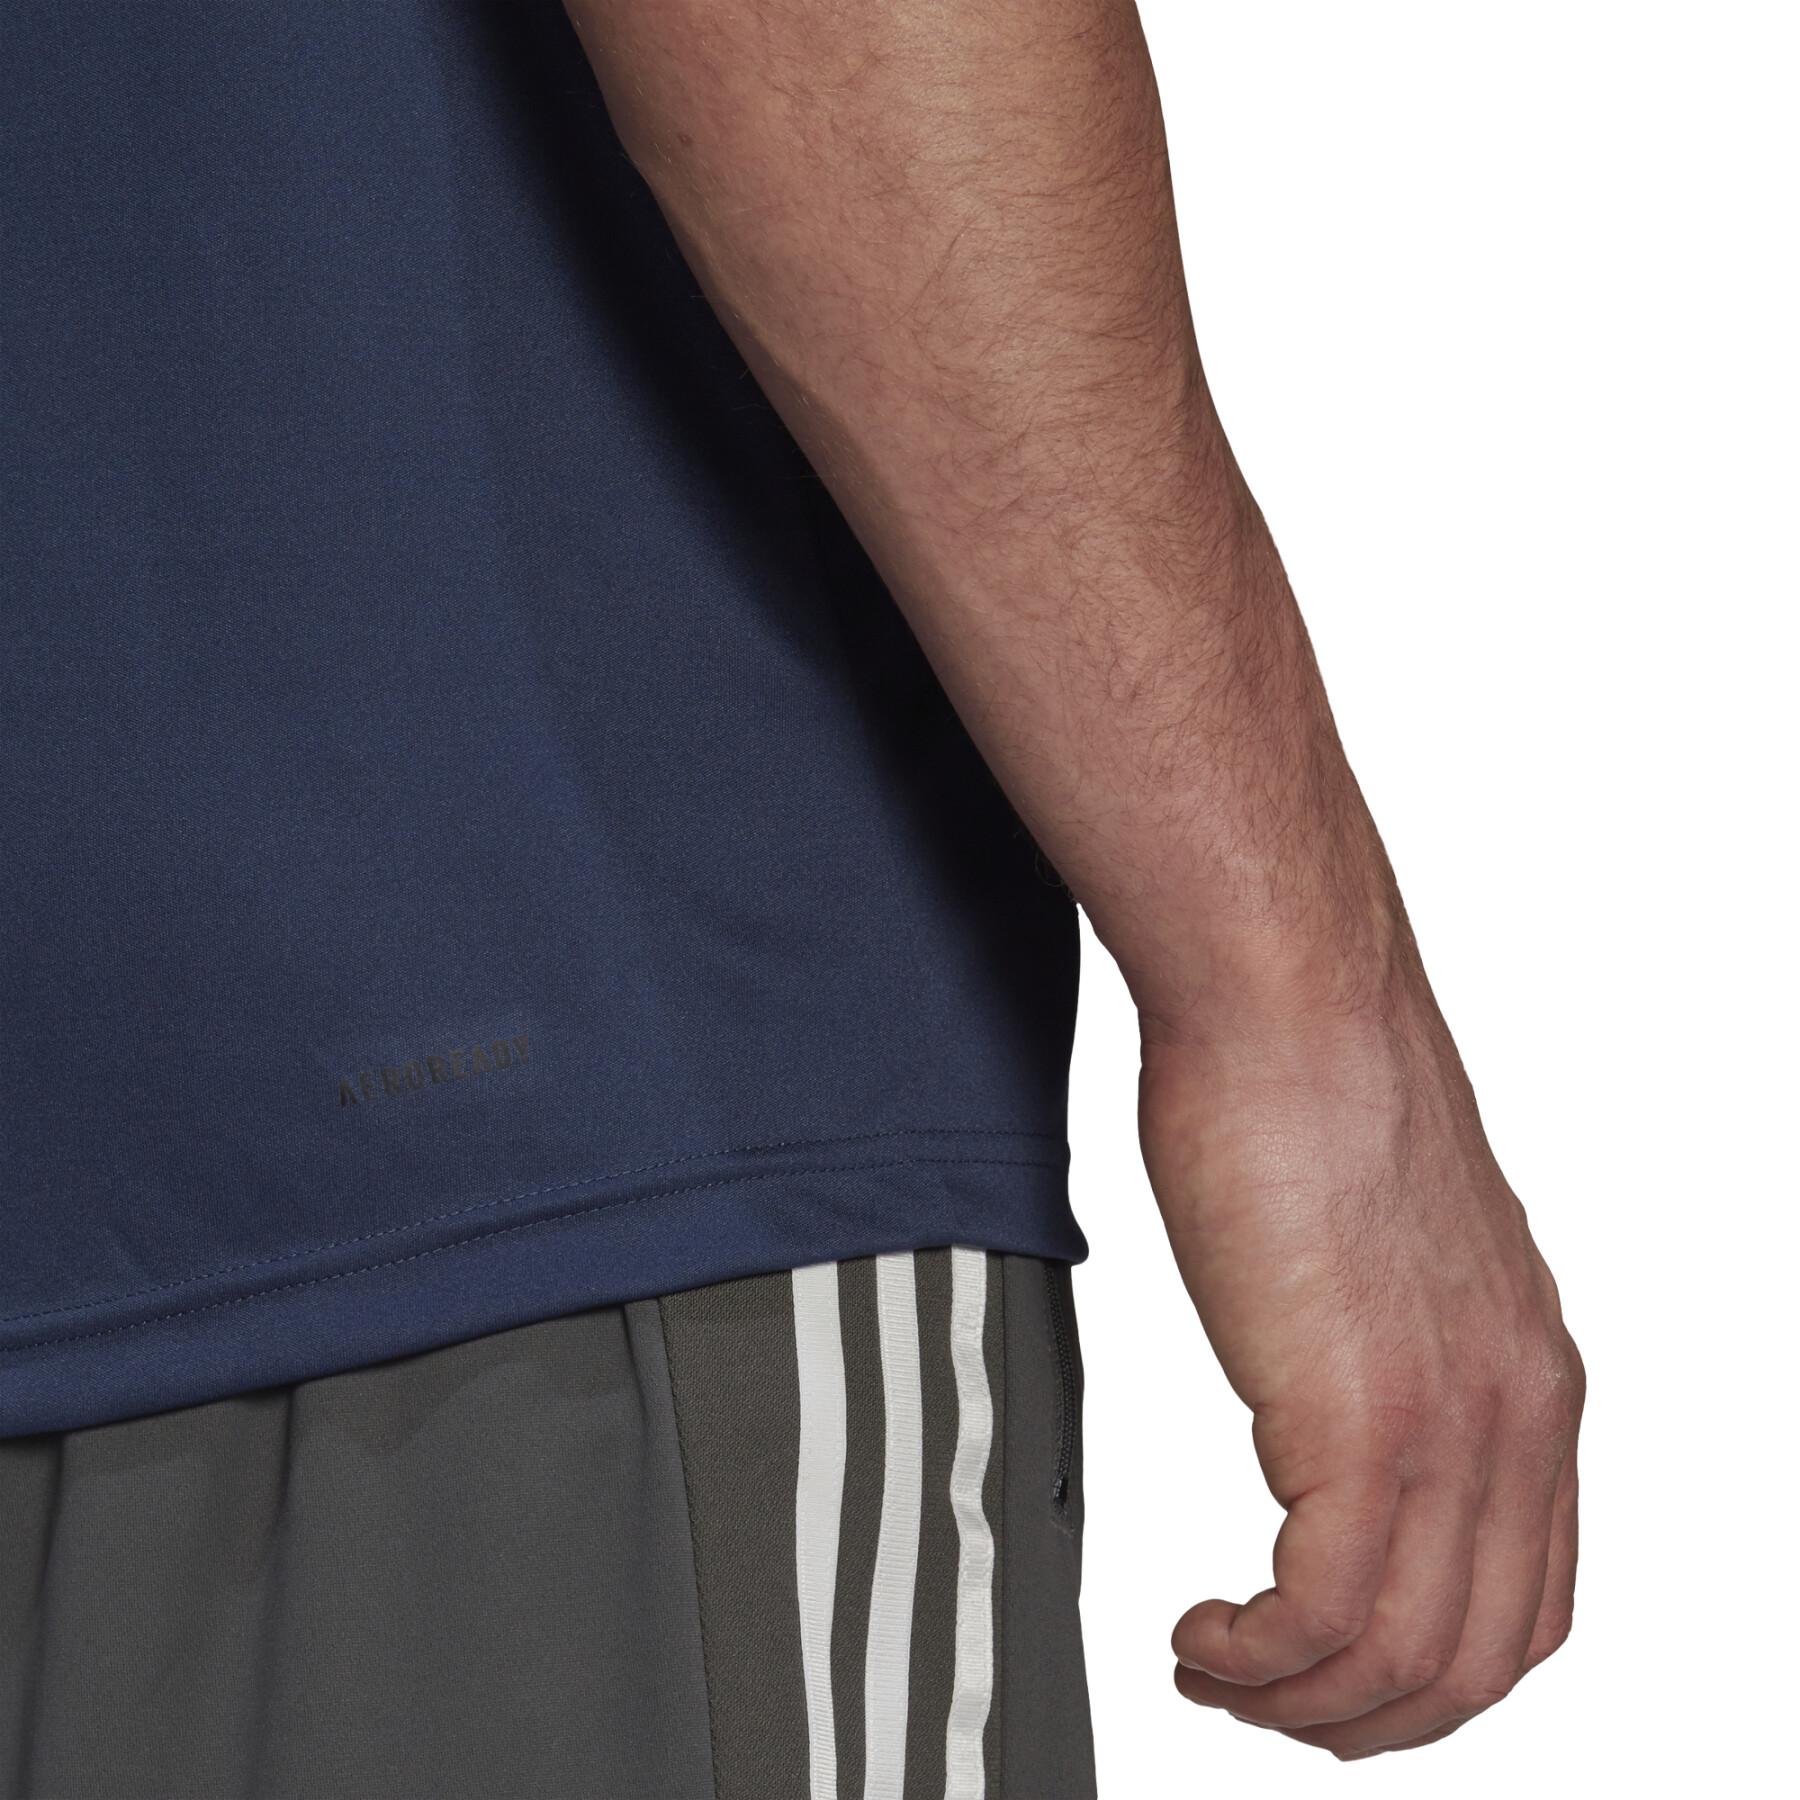 T-shirt adidas Primeblue Designed To Move Sport 3-Stripes